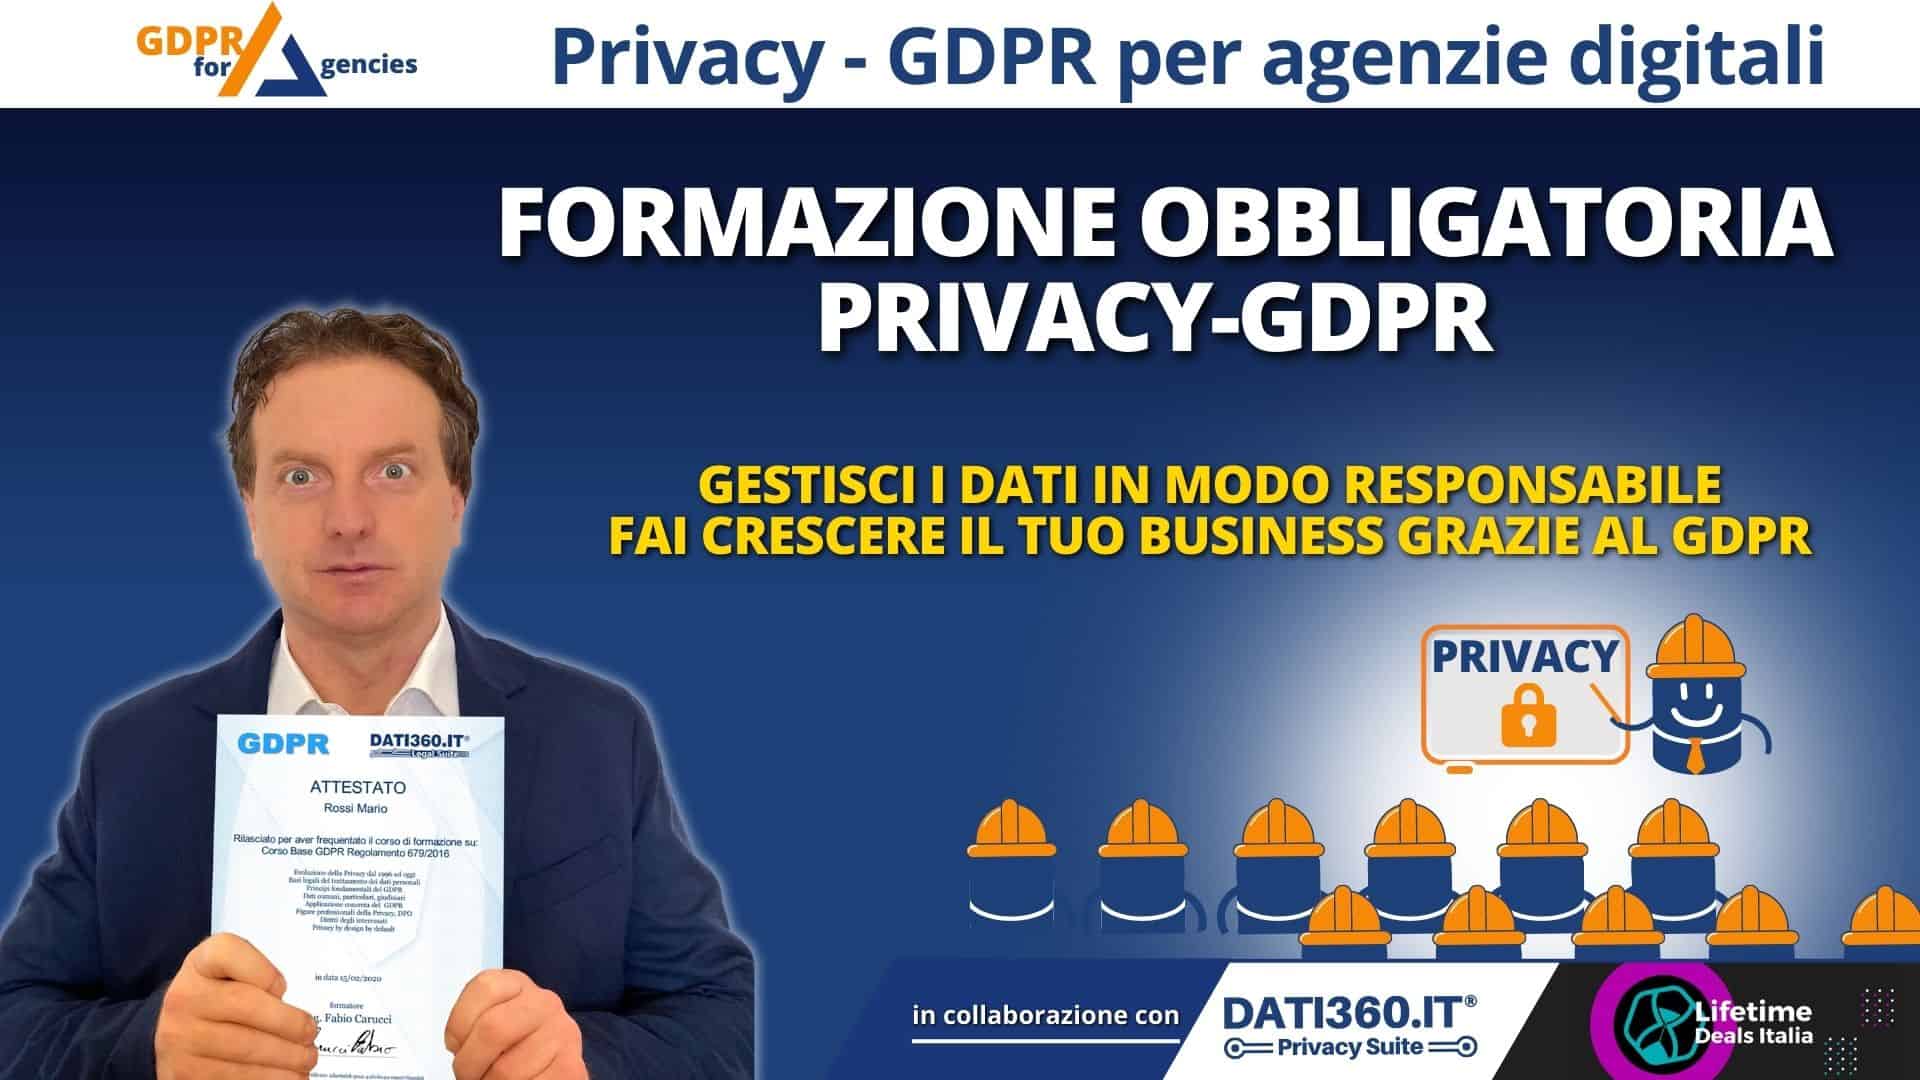 GDPR for agencies - Formazione obbligatoria Privacy - GDPR per la tua Agenzia